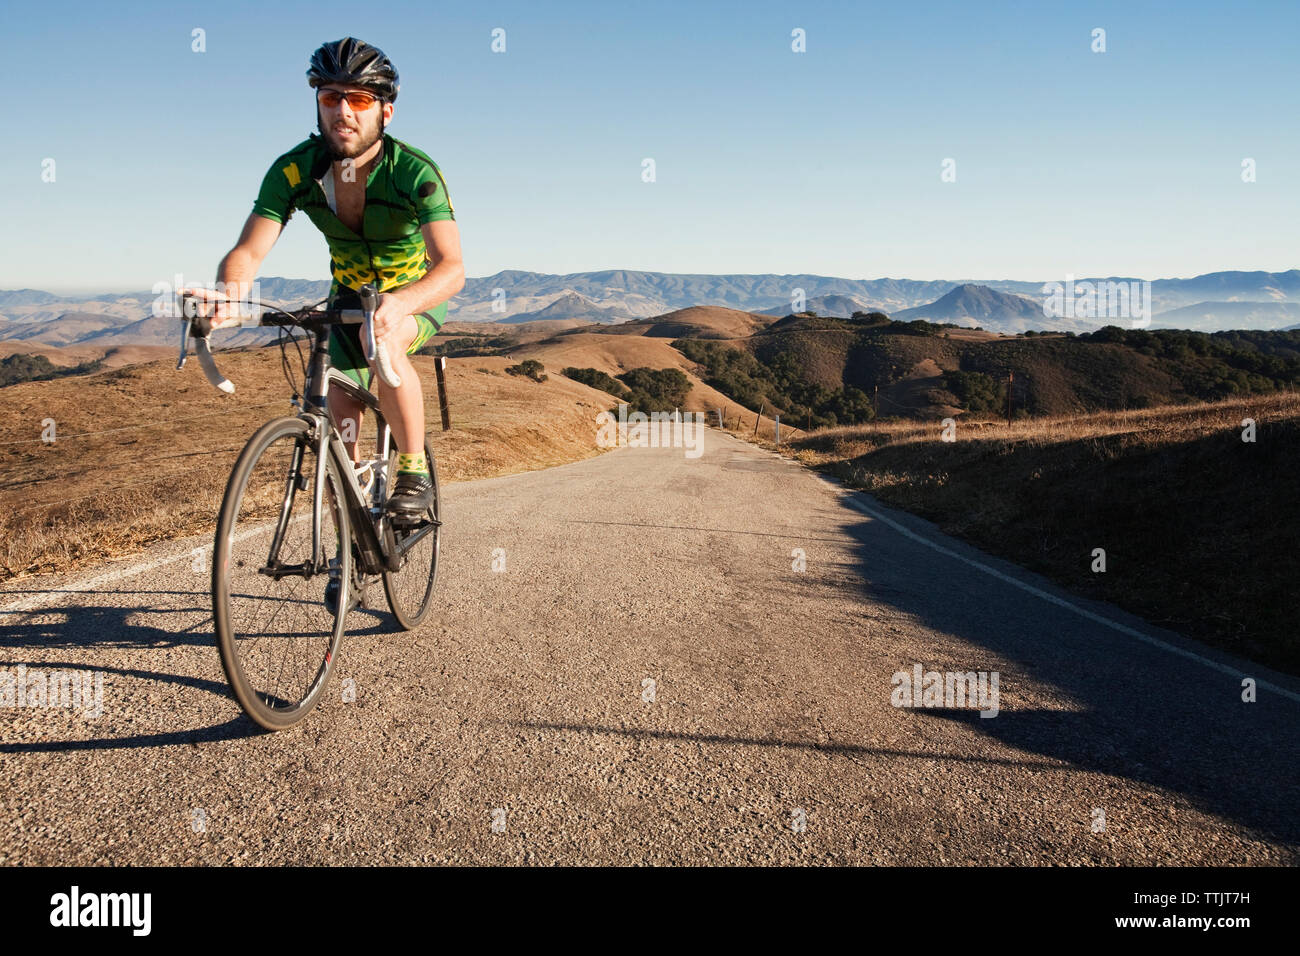 Man riding bicycle sur gravier contre ciel clair Banque D'Images